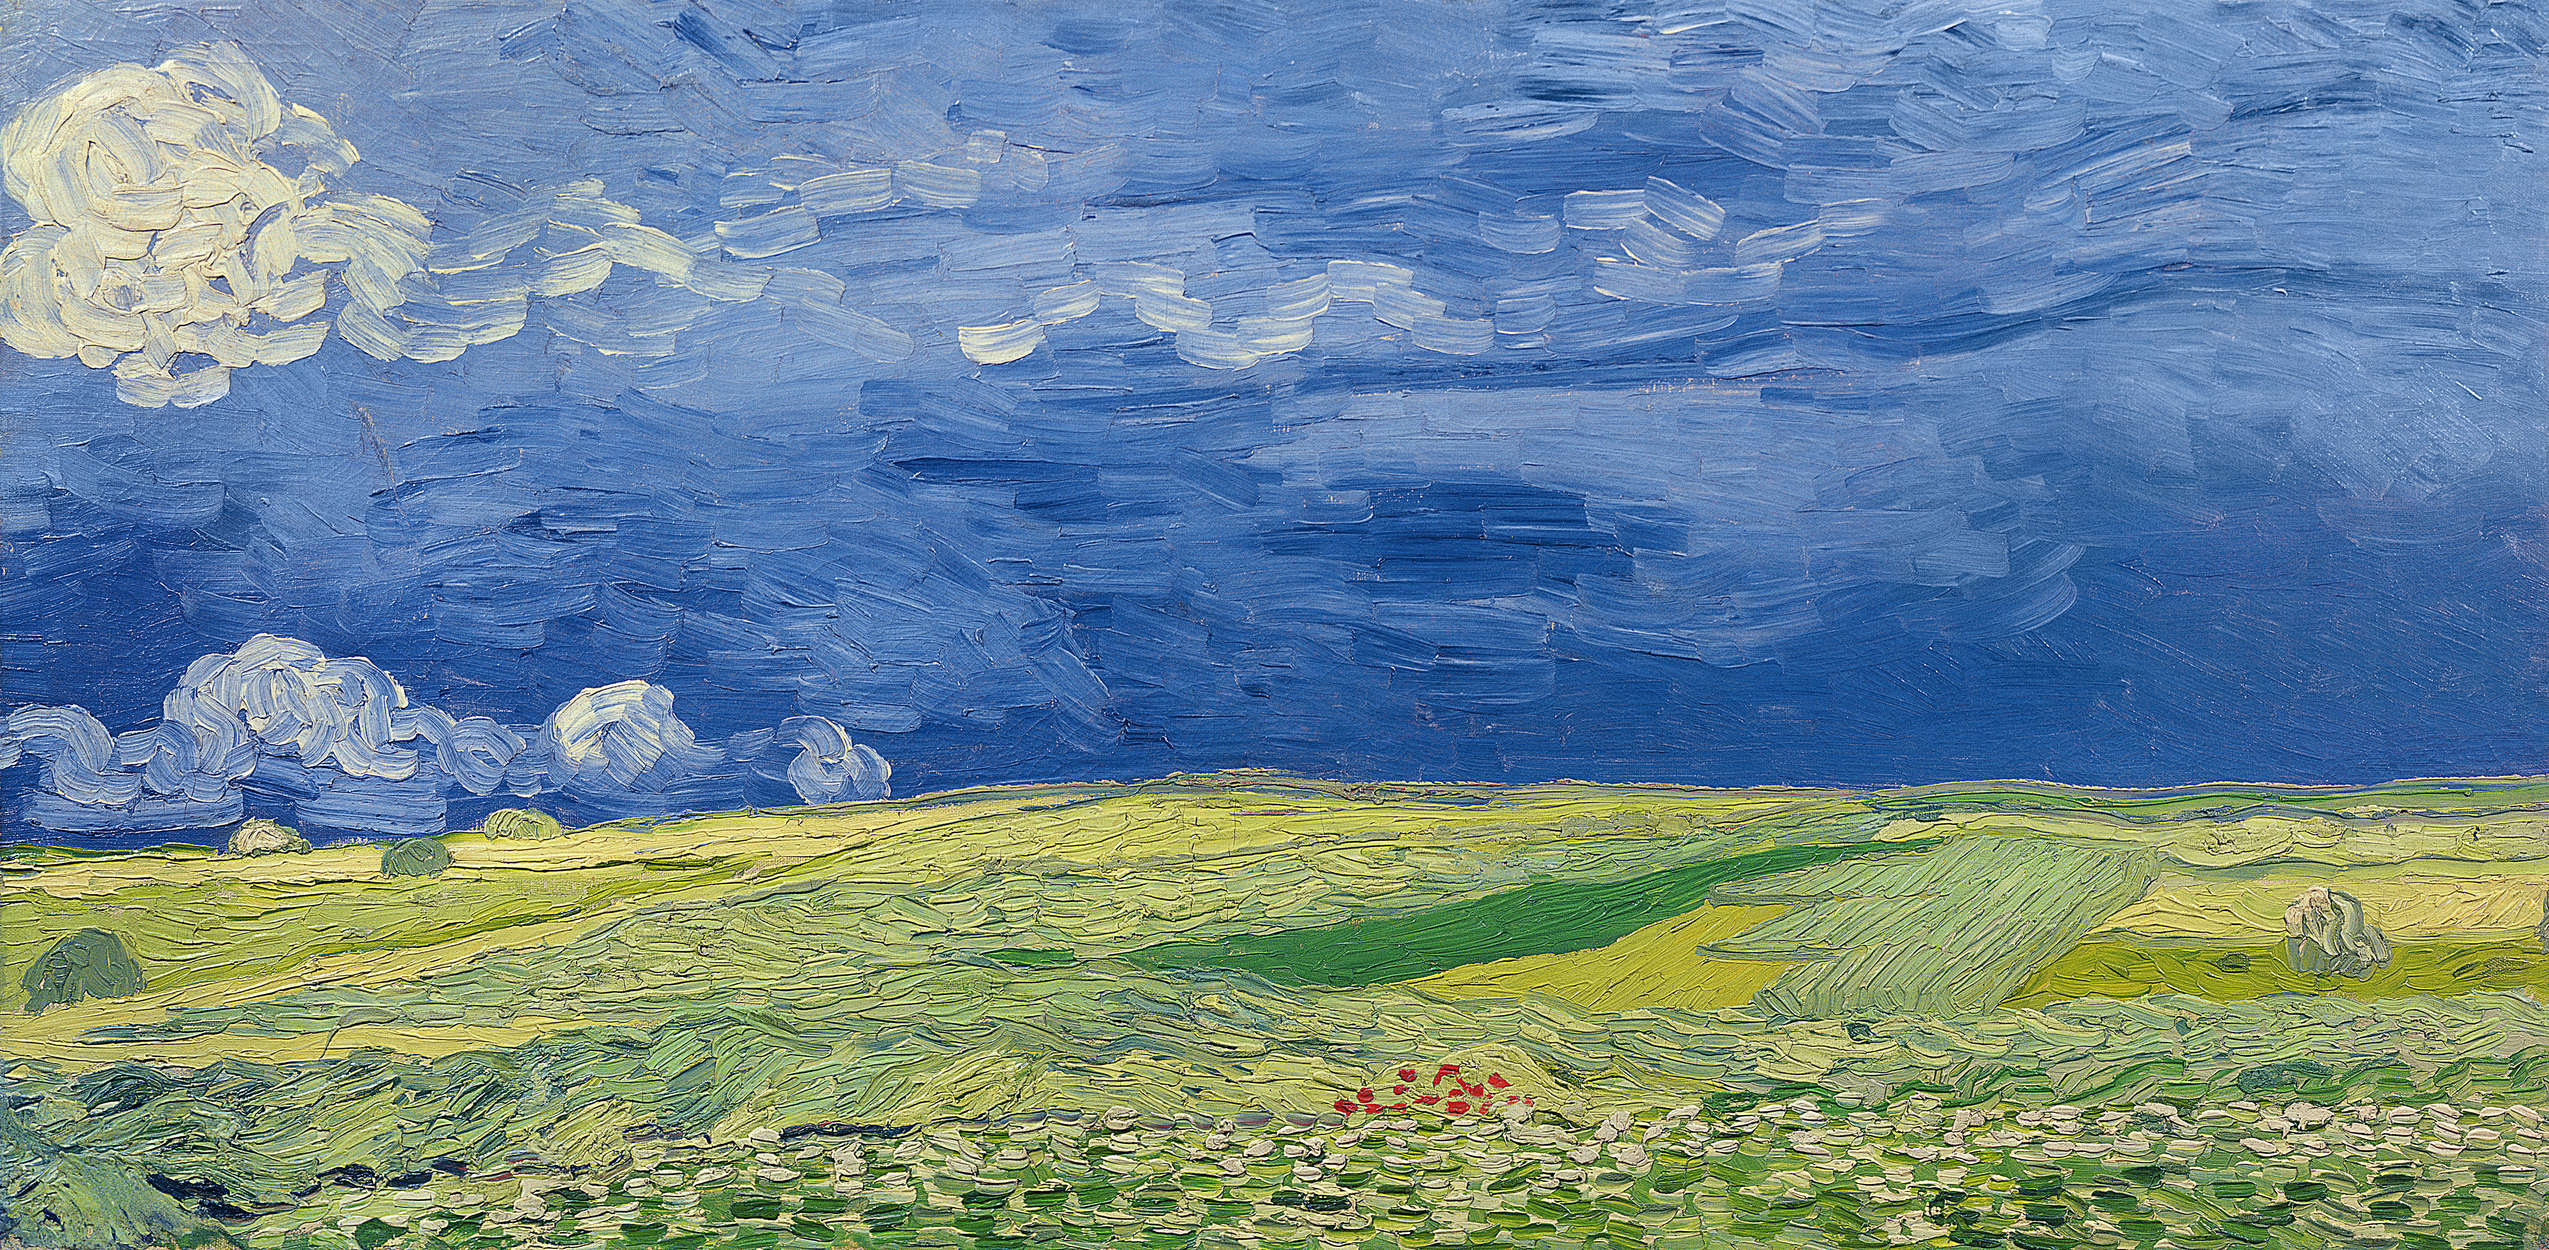             Mural "Campos de trigo bajo nubes de tormenta" de Vincent van Gogh
        